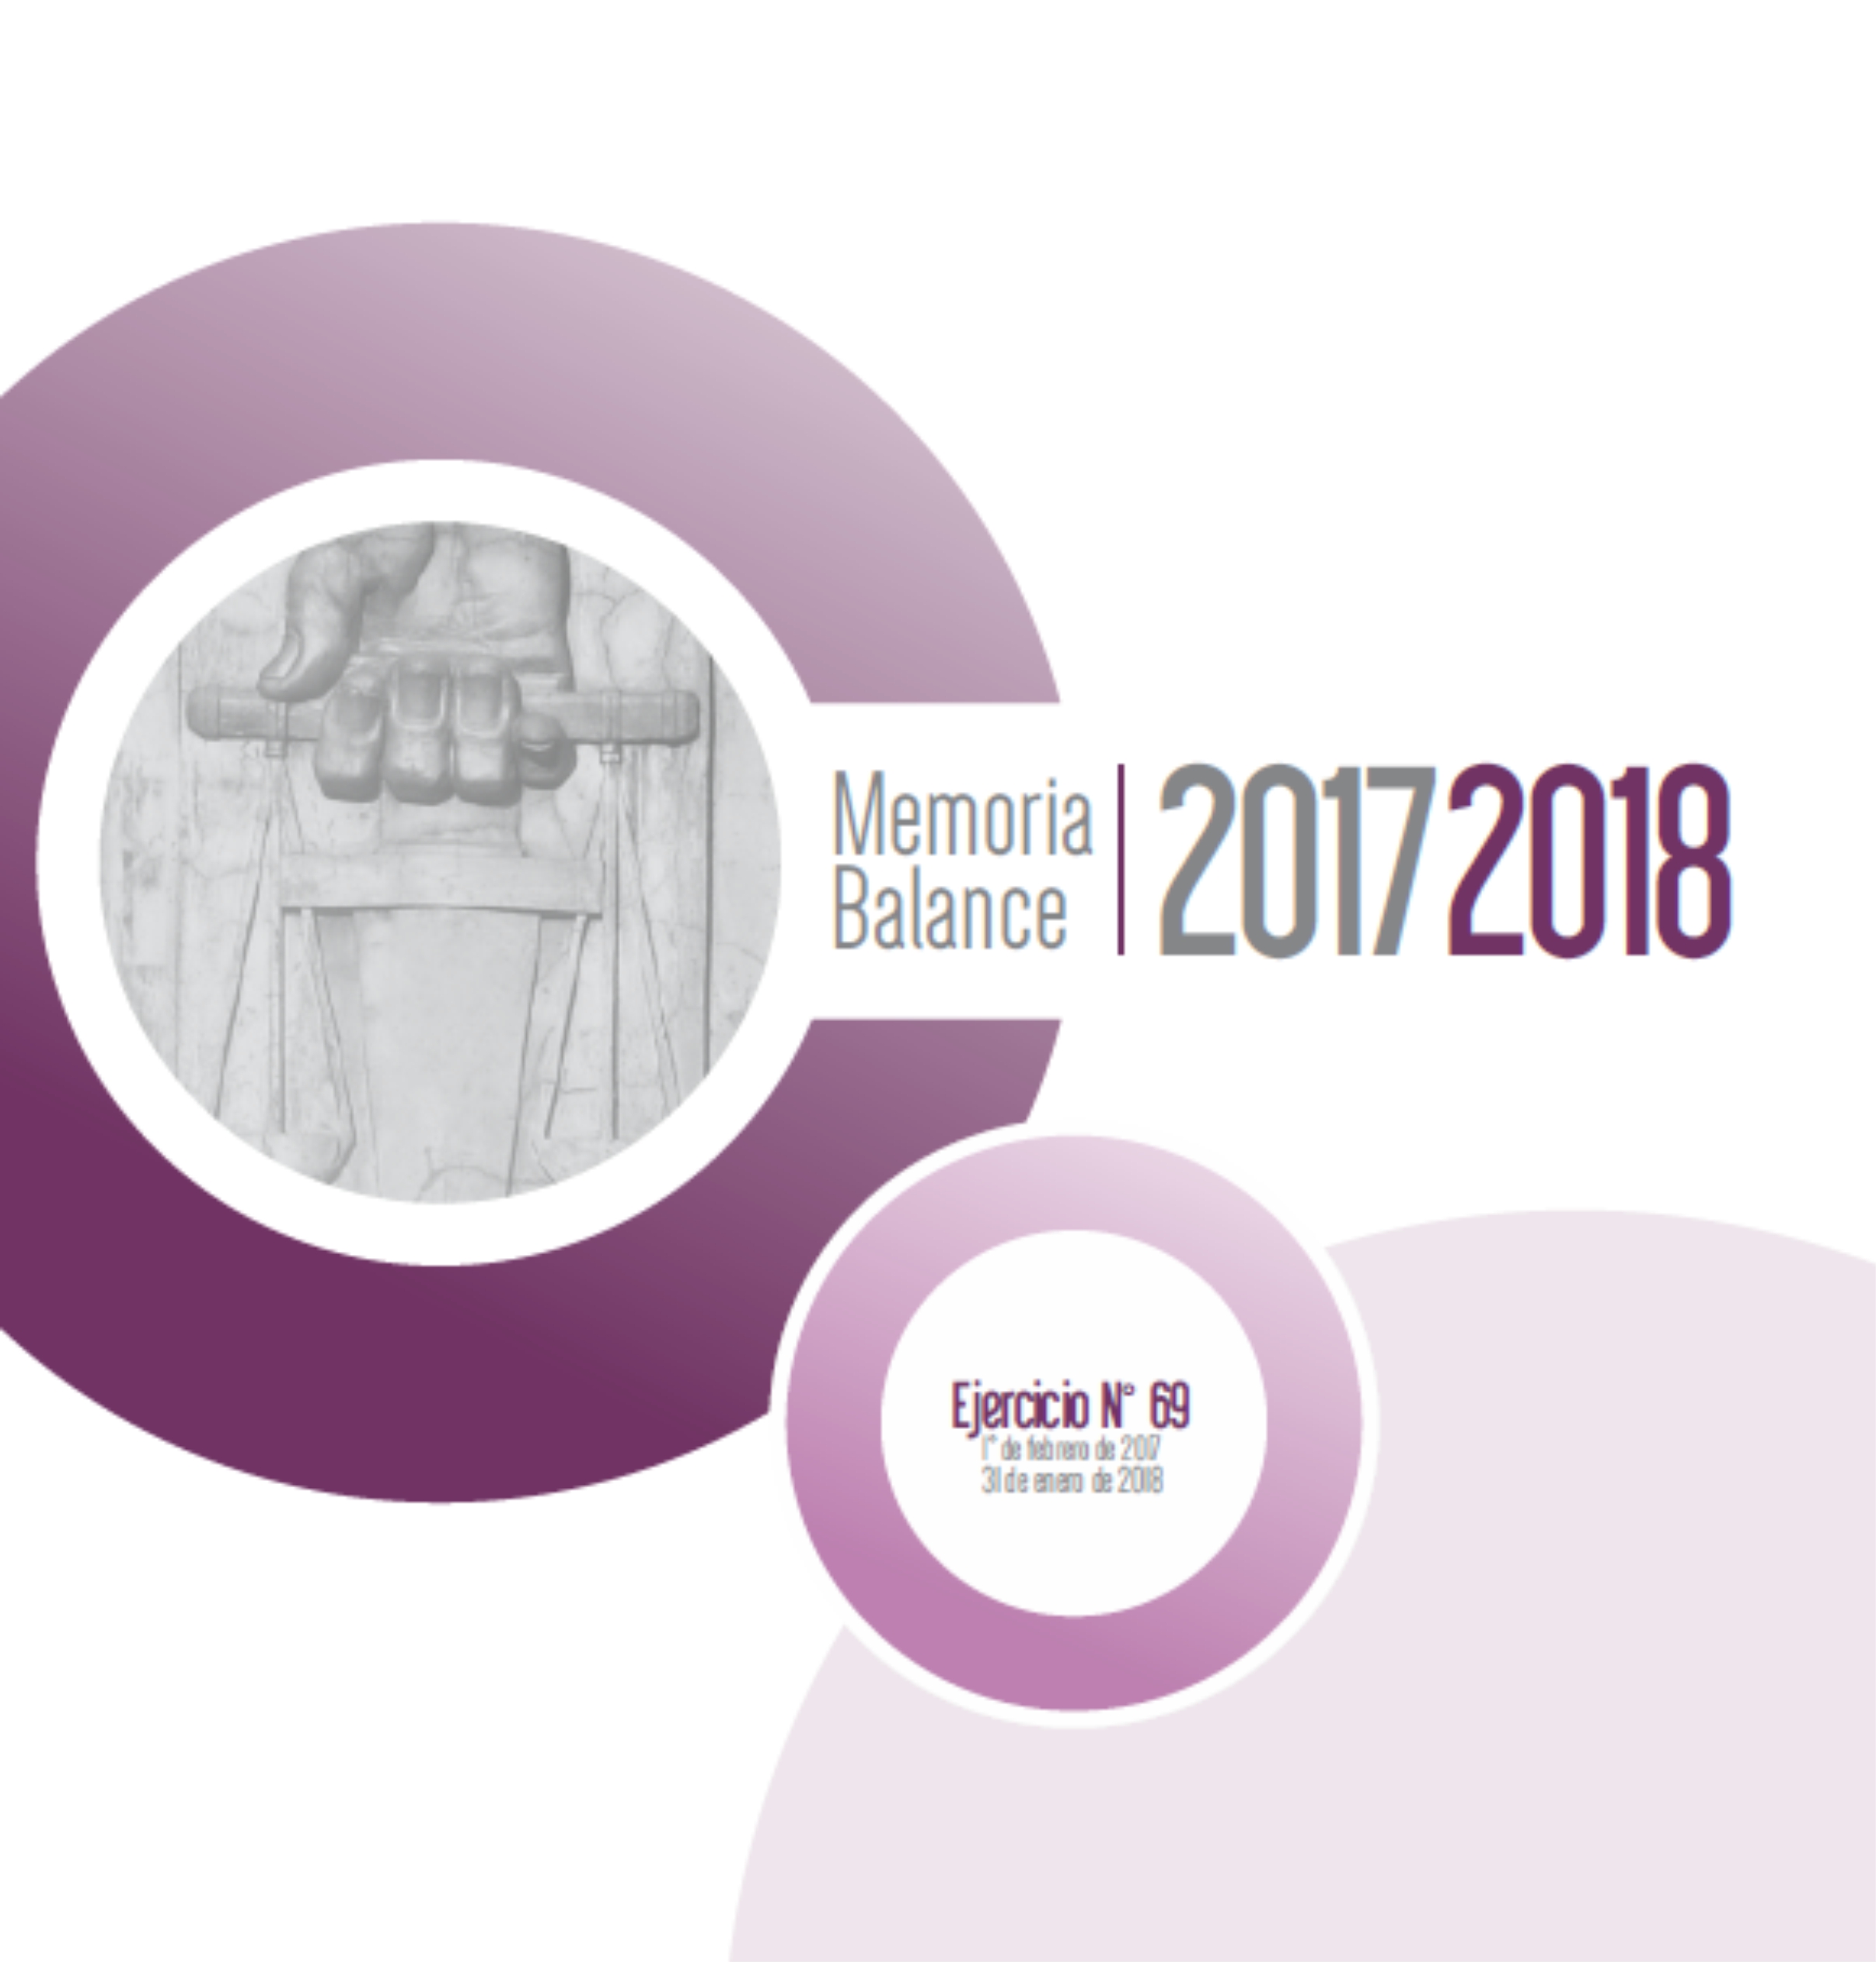 Memoria y Balance 2017-2018